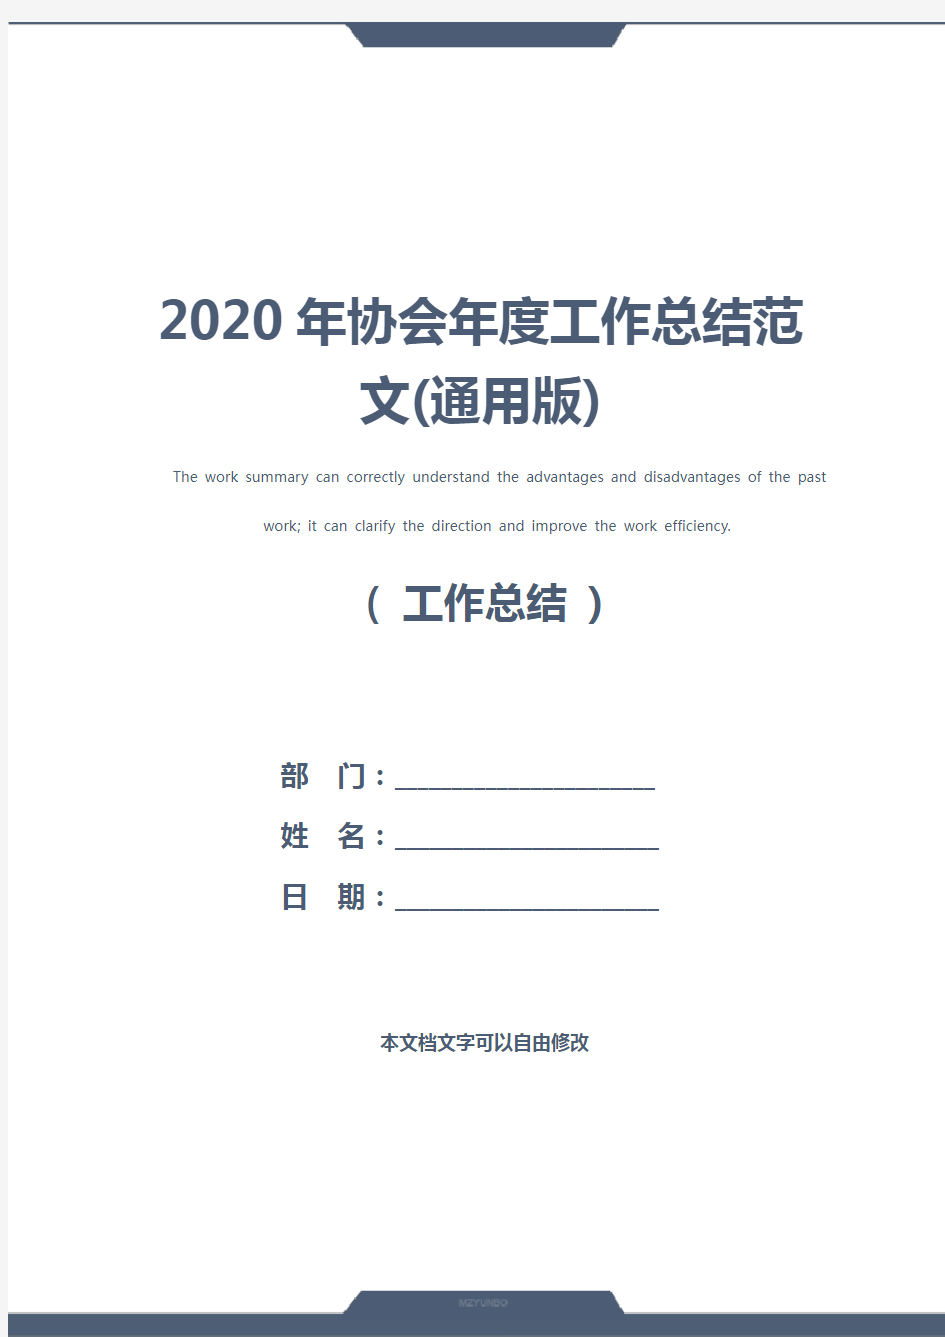 2020年协会年度工作总结范文(通用版)